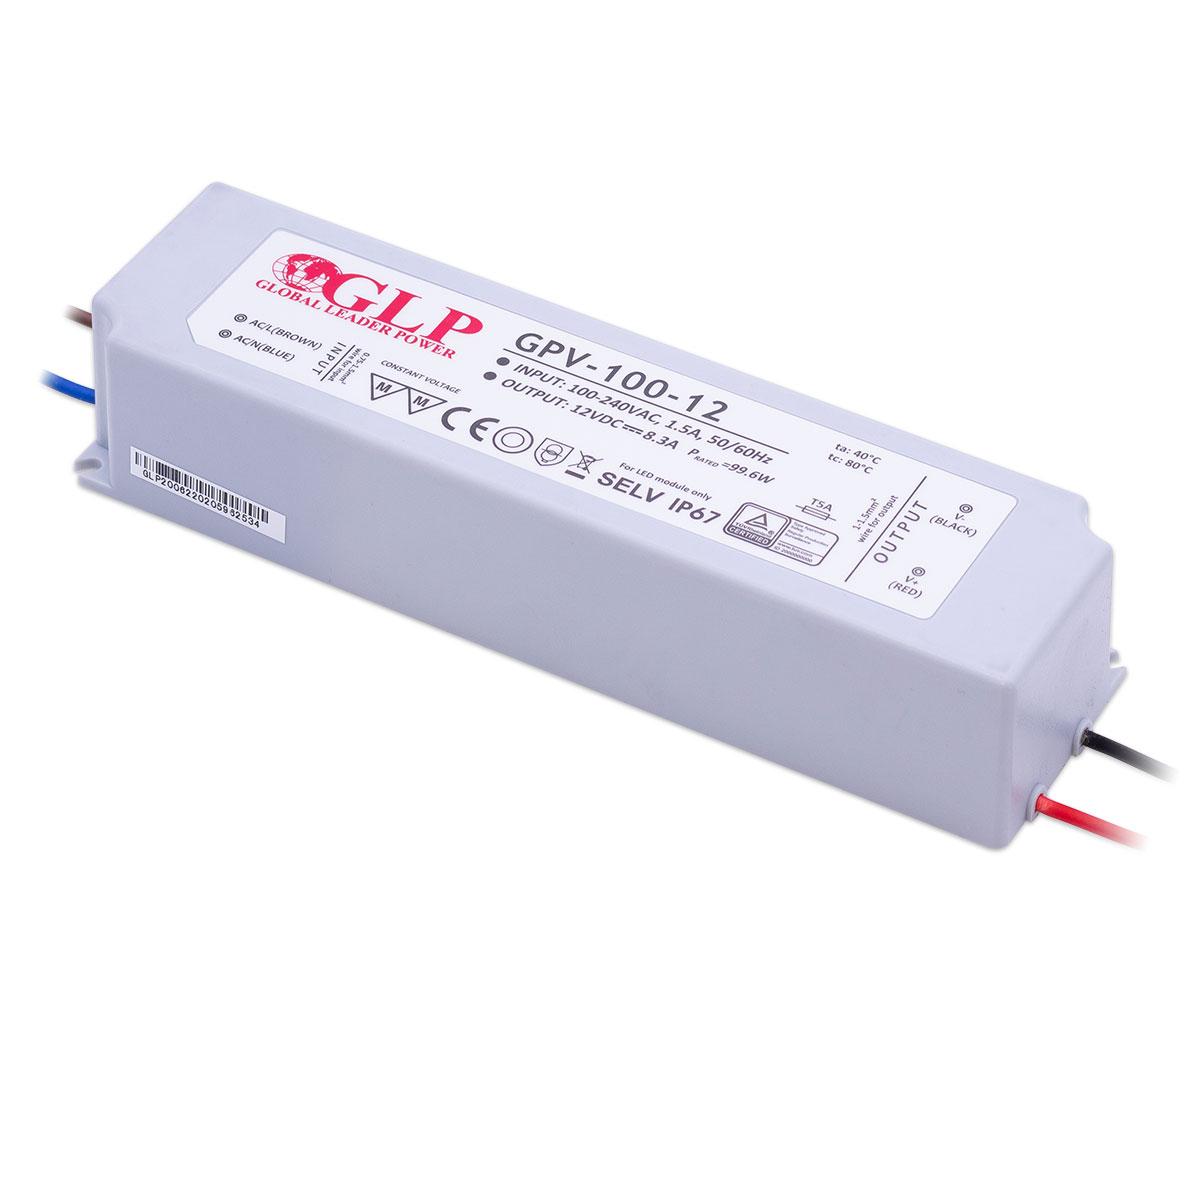 GLP GPV-100-12 LED Netzteil 100W 12V 8.3A IP67 Schaltnetzteil CV